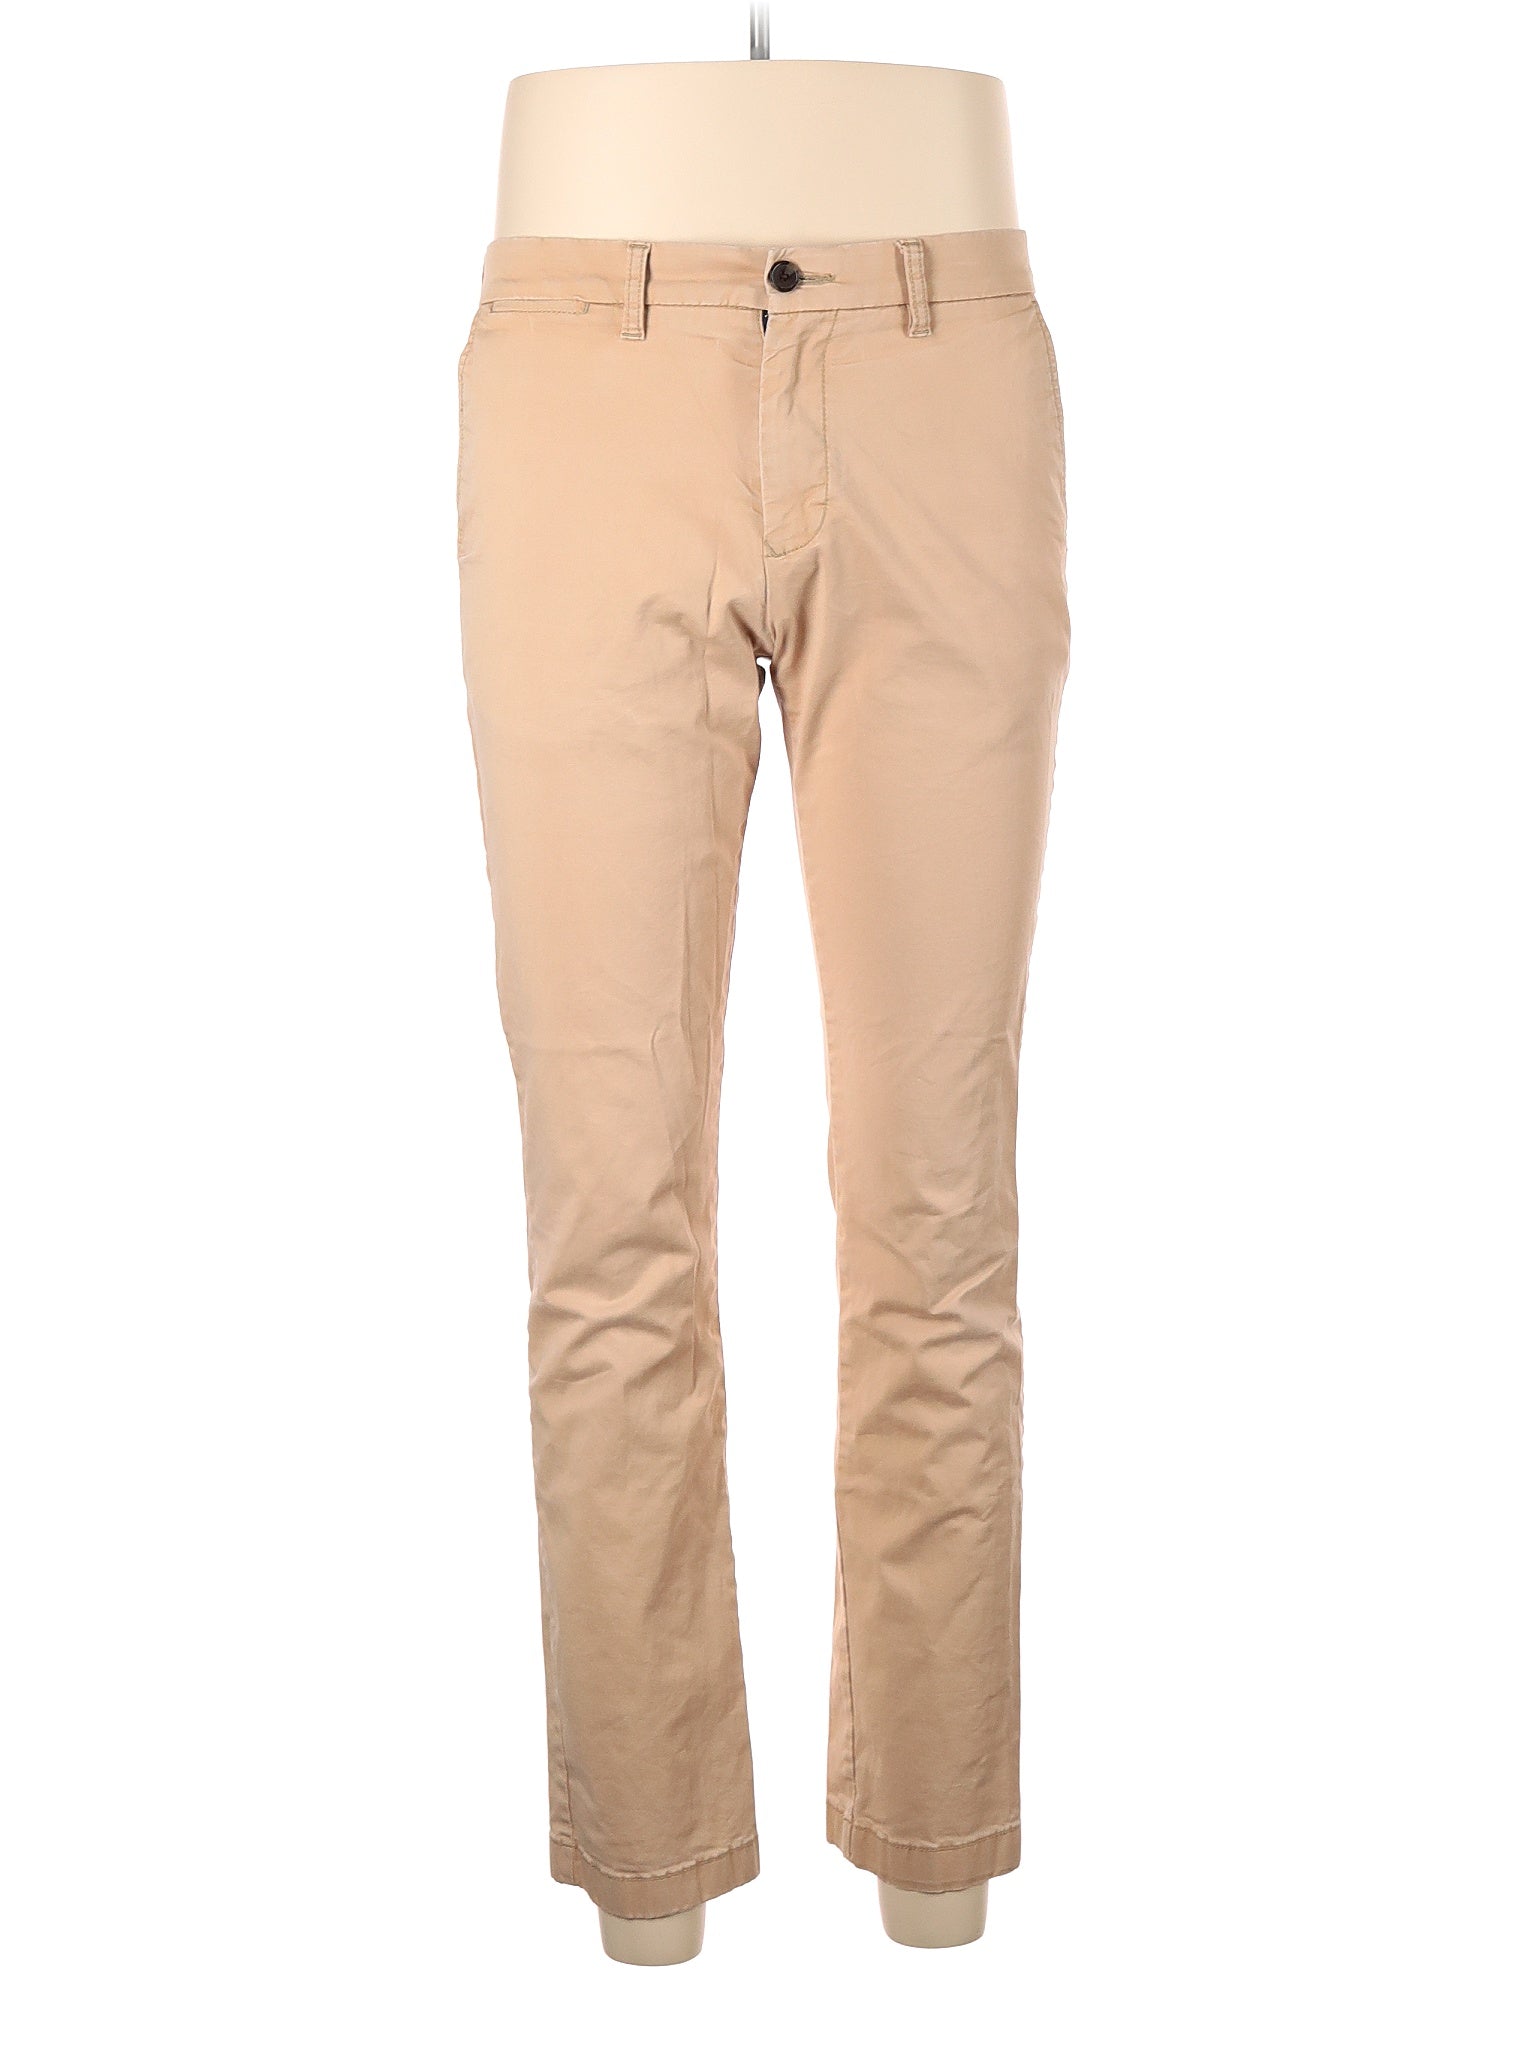 Khaki/Chino Pants size - 32 (W32 L32)